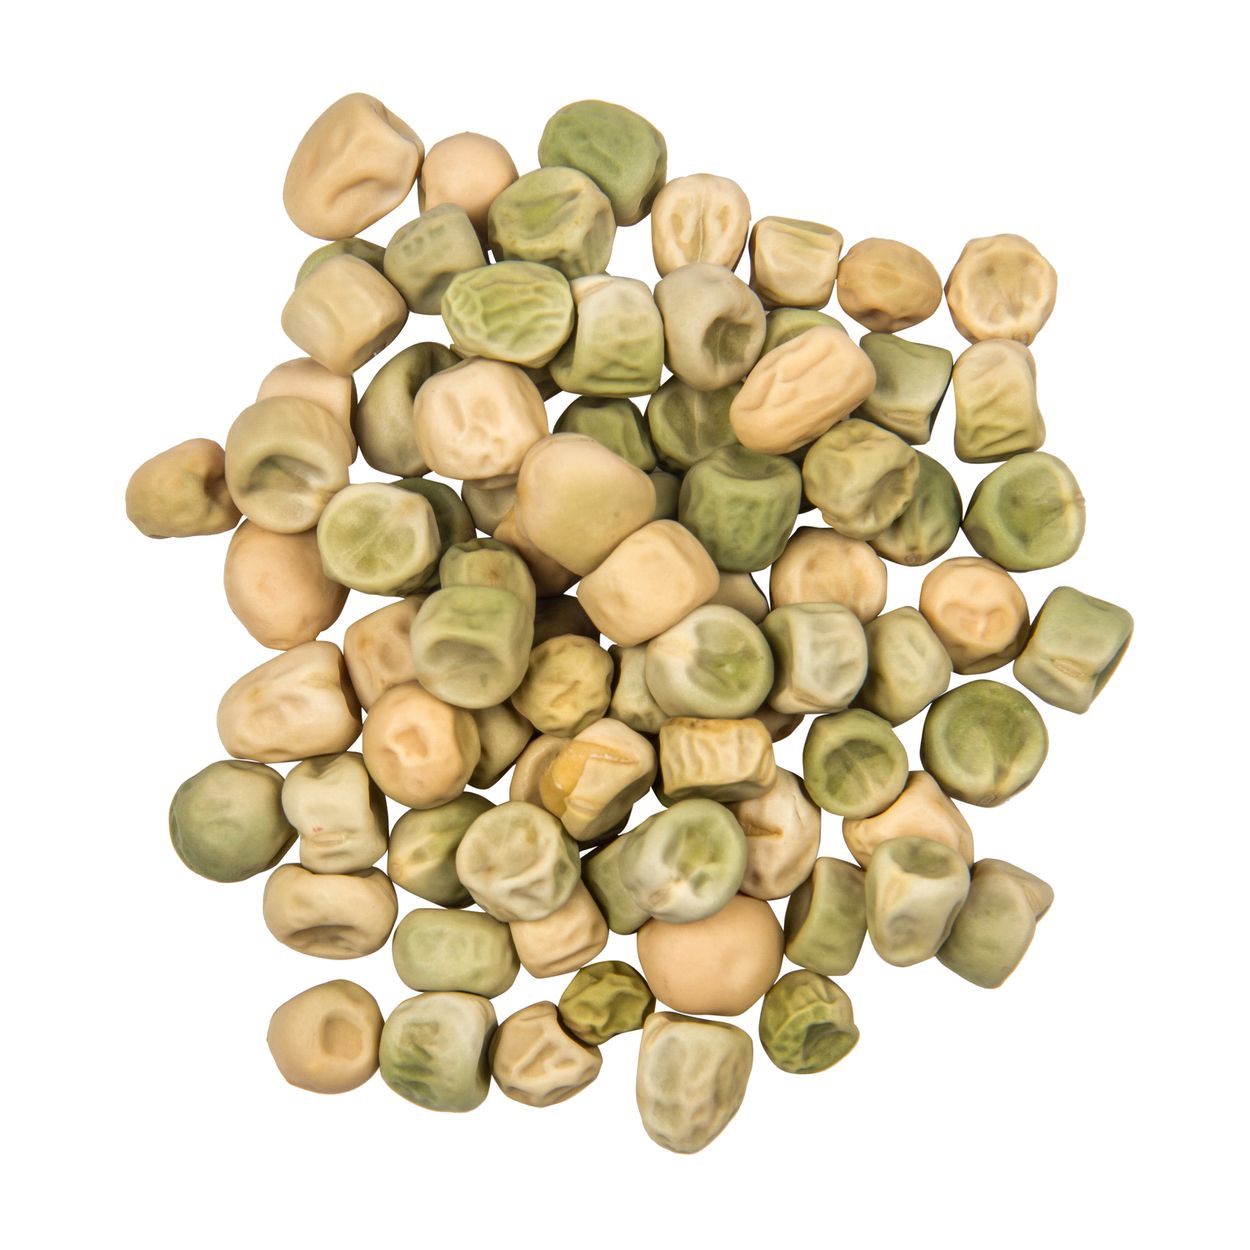 Brim Seed Co. - Edible Pod Sugar Ann Pea Seed